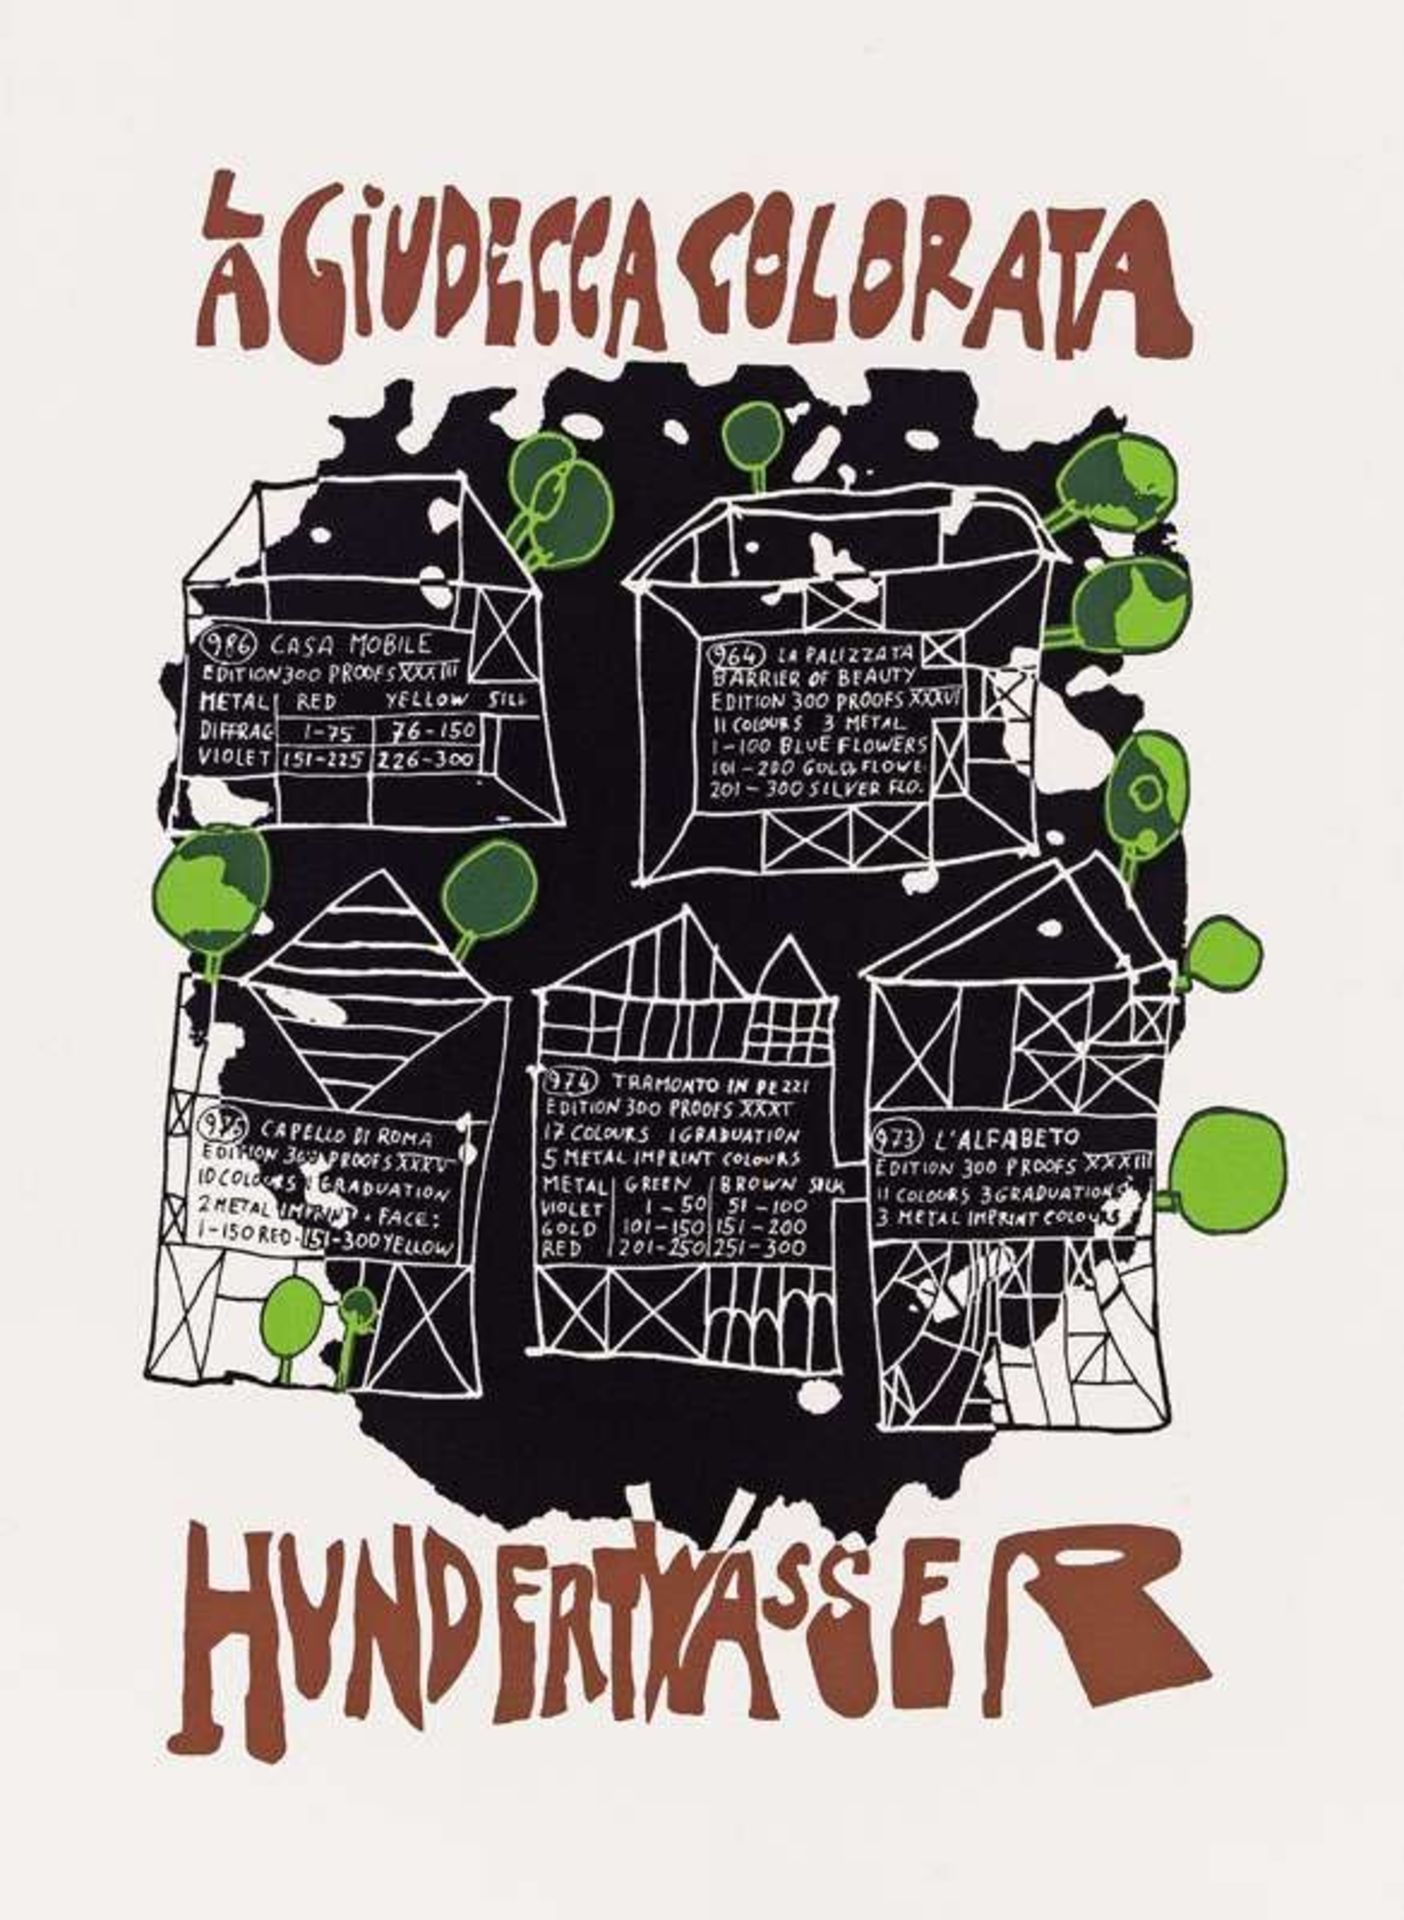 Friedensreich Hundertwasser * La Giudecca Colorata; portfolio 5 serigraphies in wooden box, Gedruckt